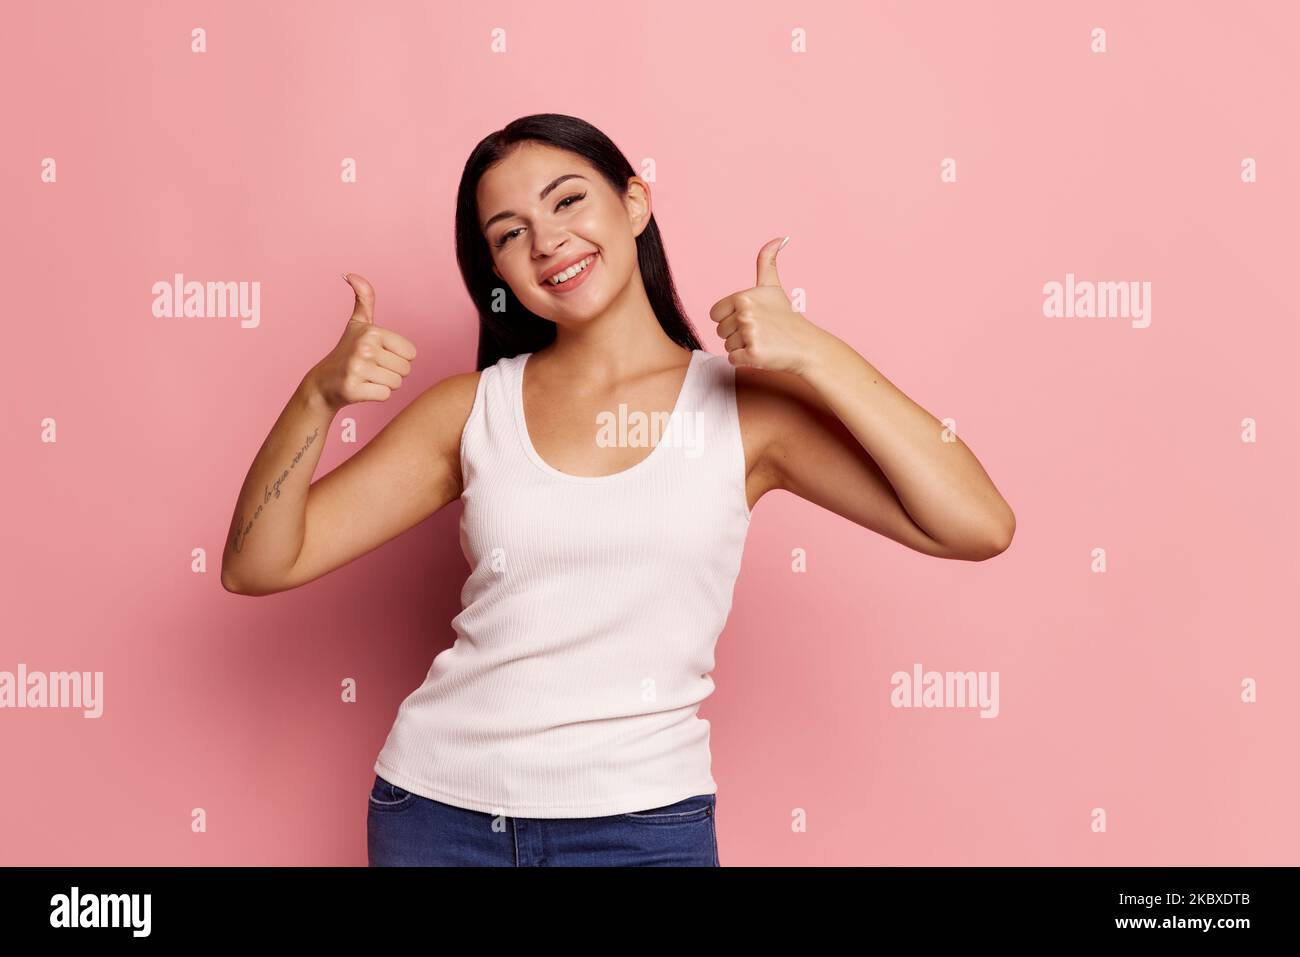 Mir geht es gut. Glückliche Frau, Schild ok, lächelnd, isoliert auf trendigen rosa Studio-Hintergrund. Schönes weibliches Porträt in halber Länge. Emotionale Frau. Mensch Stockfoto